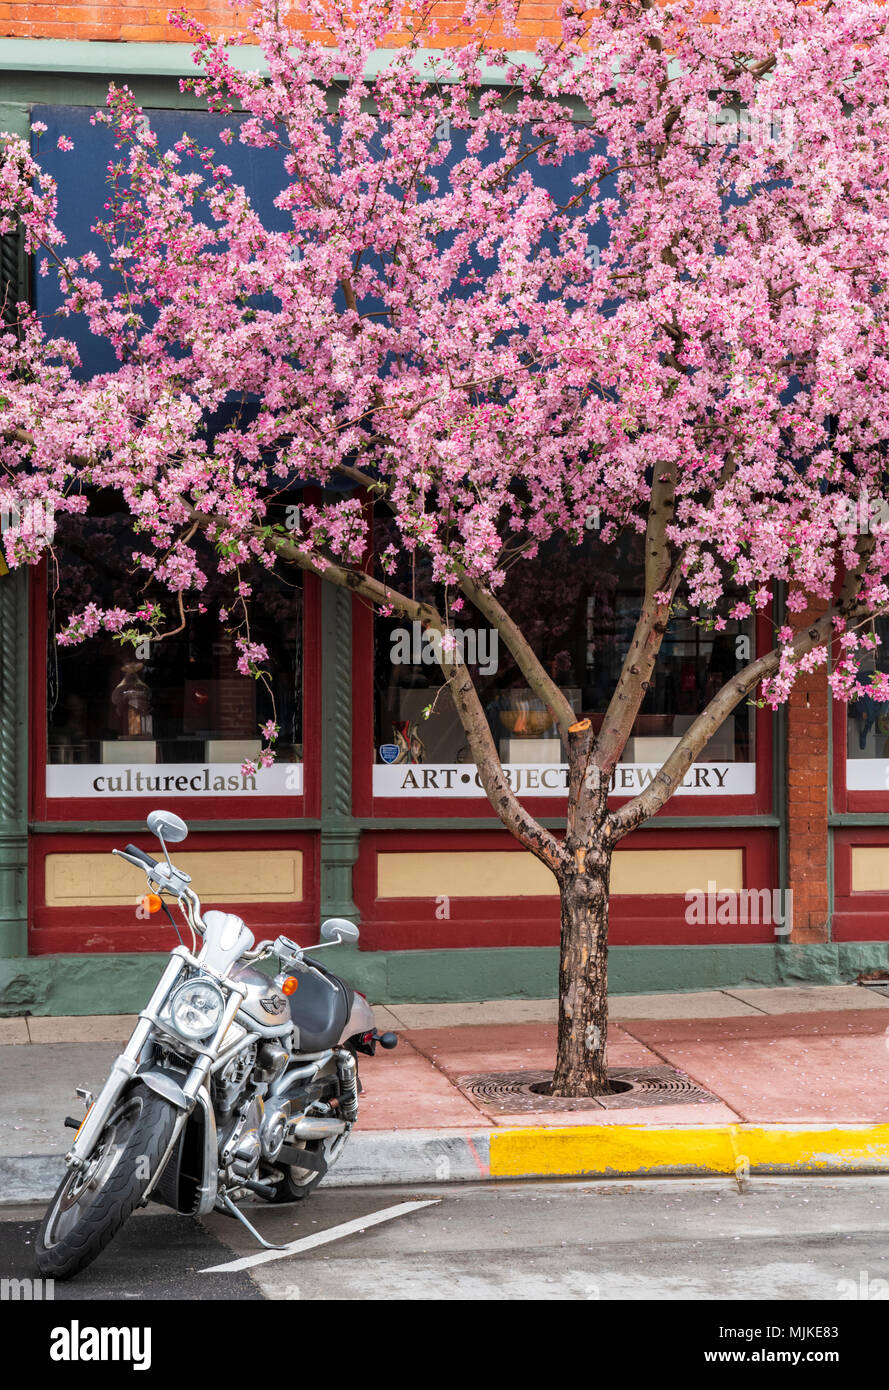 Harley Davidson Crabapple motorcyle bajo el árbol en plena primavera flor; cangrejo manzanas; Malus; caduco; árboles; Rosaceae; Salida, Colorado, EE.UU. Foto de stock